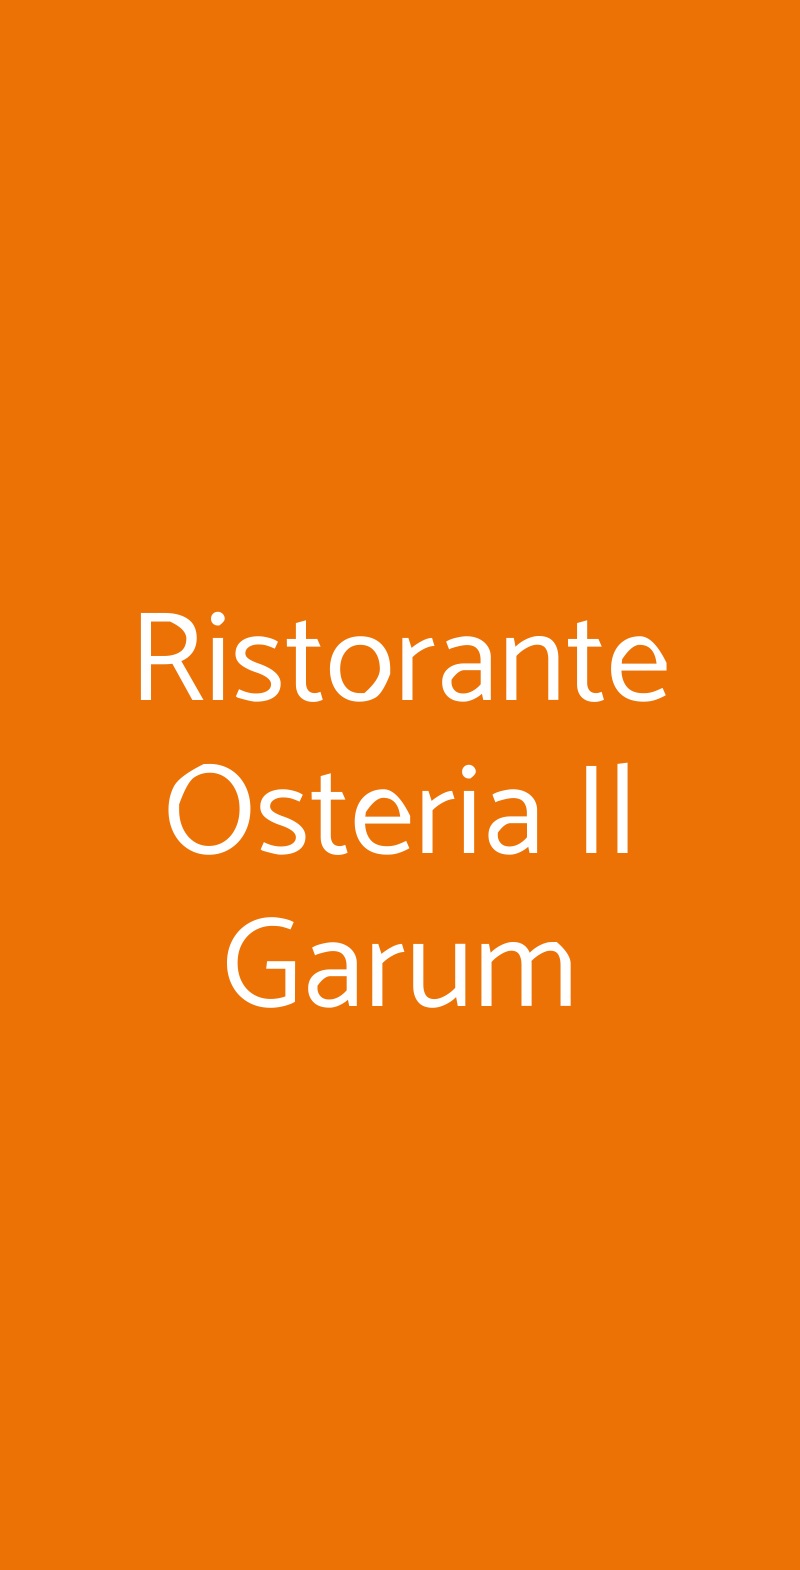 Ristorante Osteria Il Garum Napoli menù 1 pagina